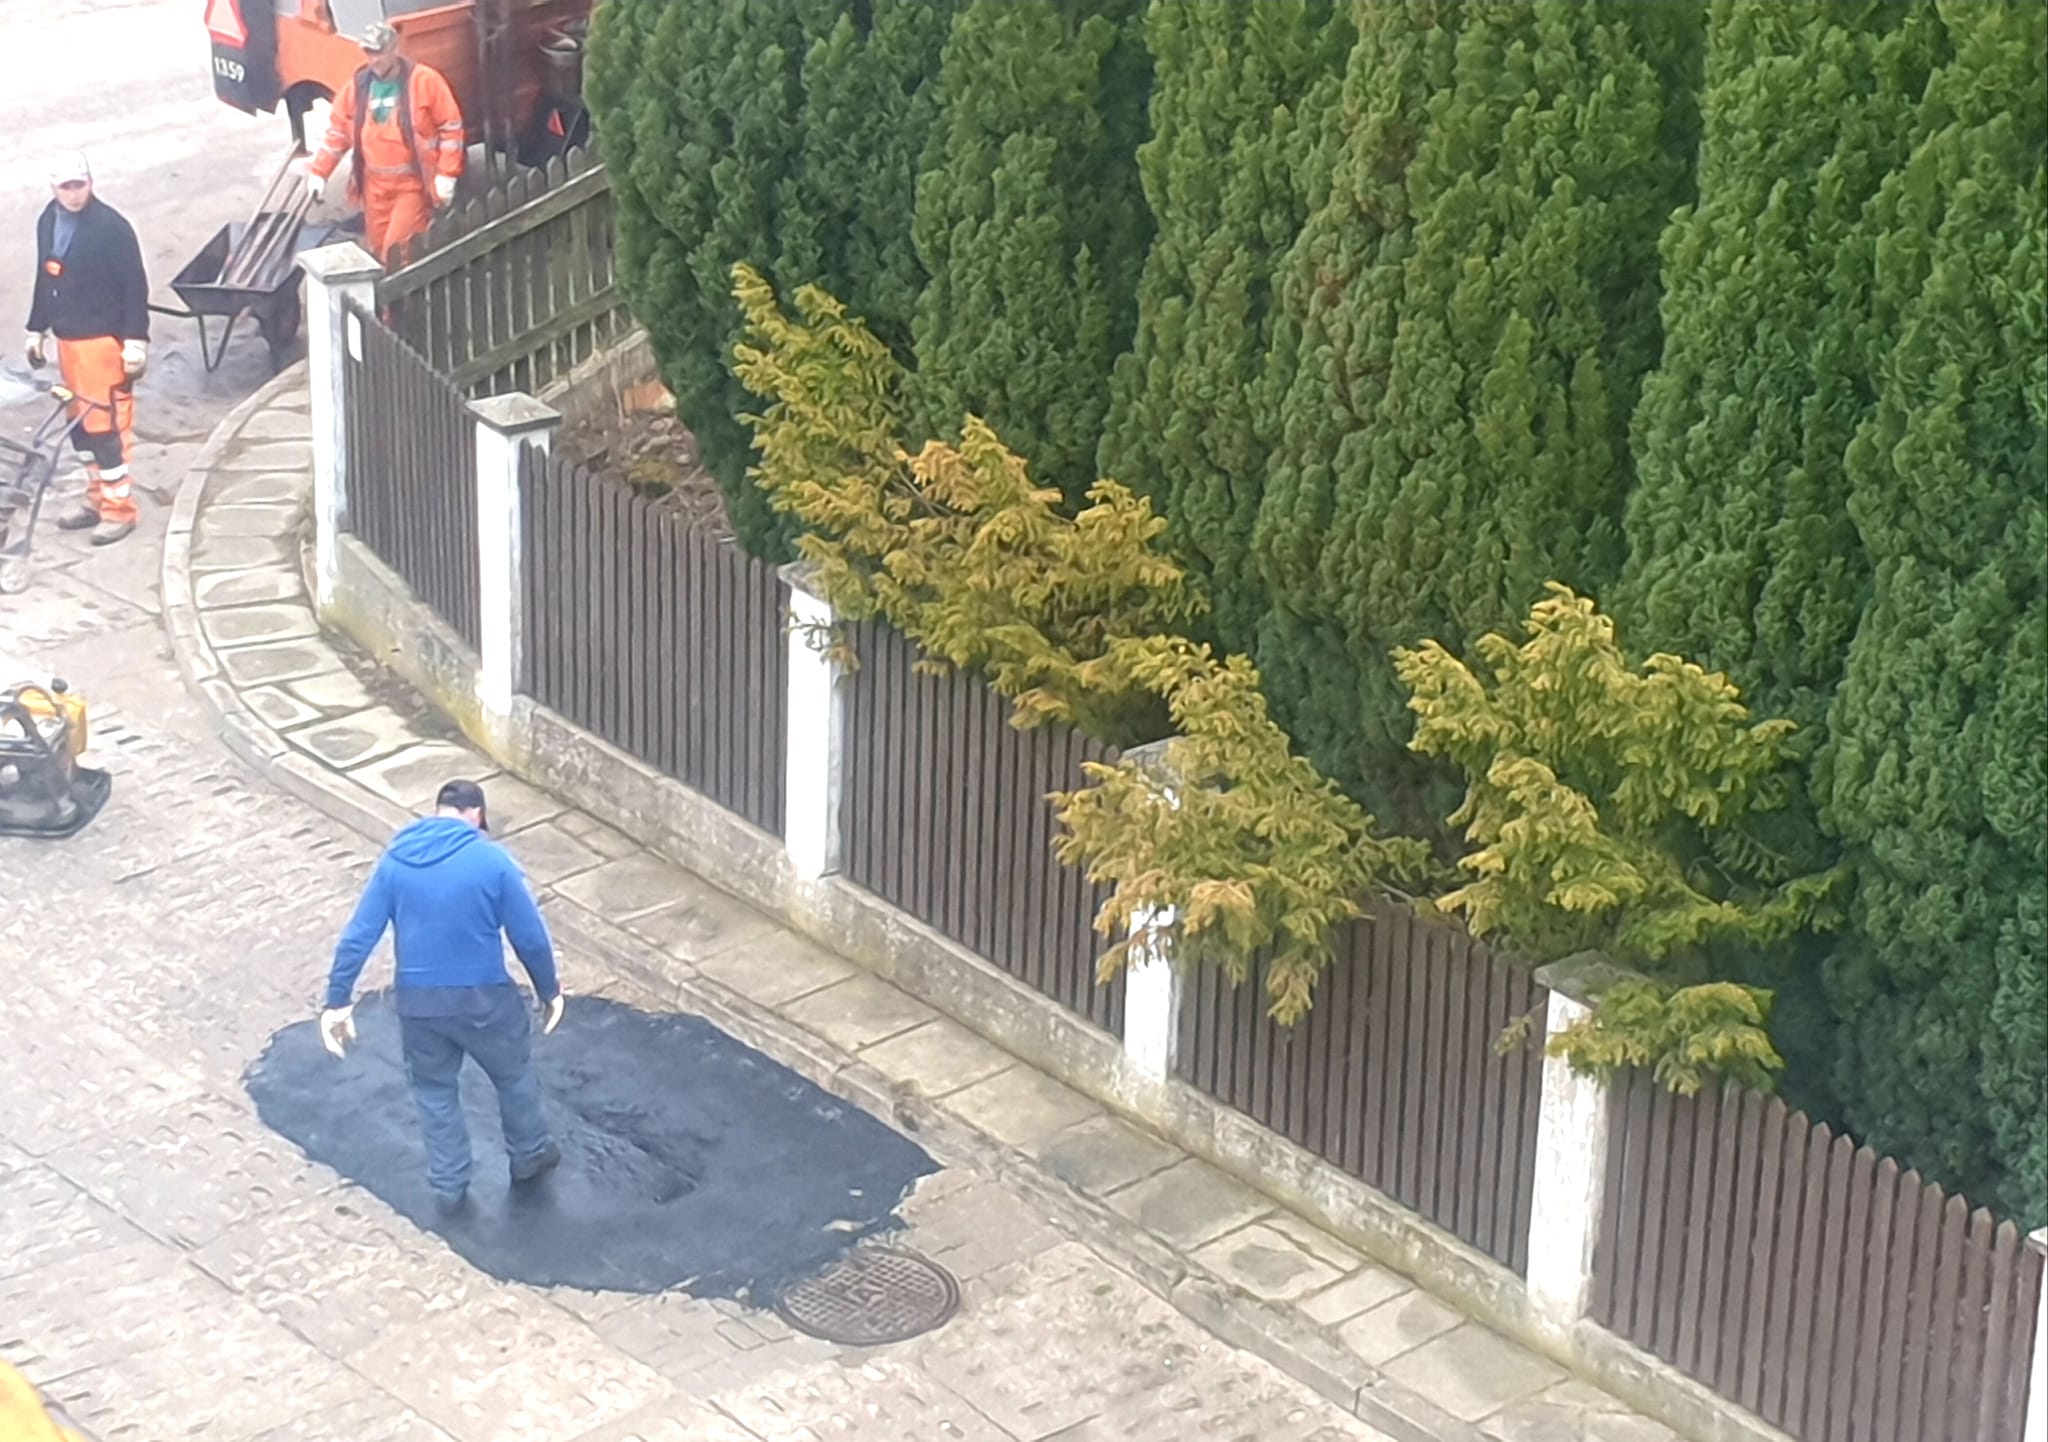 Zdjęcie z remontu po gdyńsku w Gdyni Dąbrowie. Mężczyzna przyklepuje dziurę nogą.